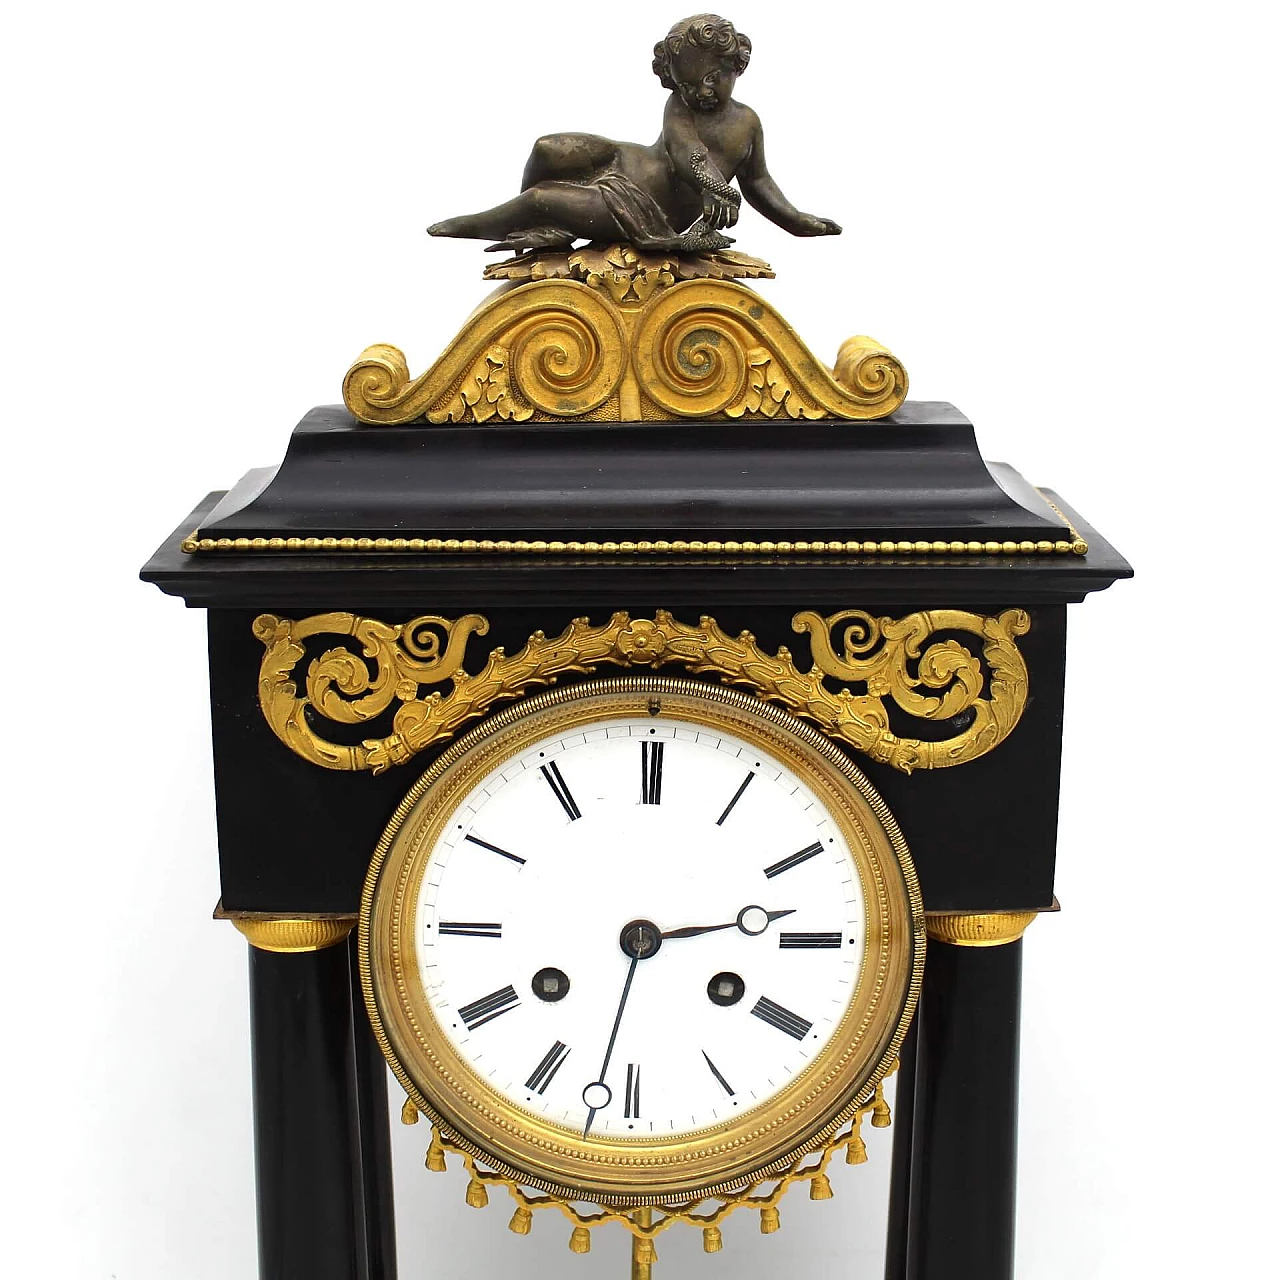 Direttorio clock with pendulum in gilded bronze and black Belgium marble, 18th century 1253199